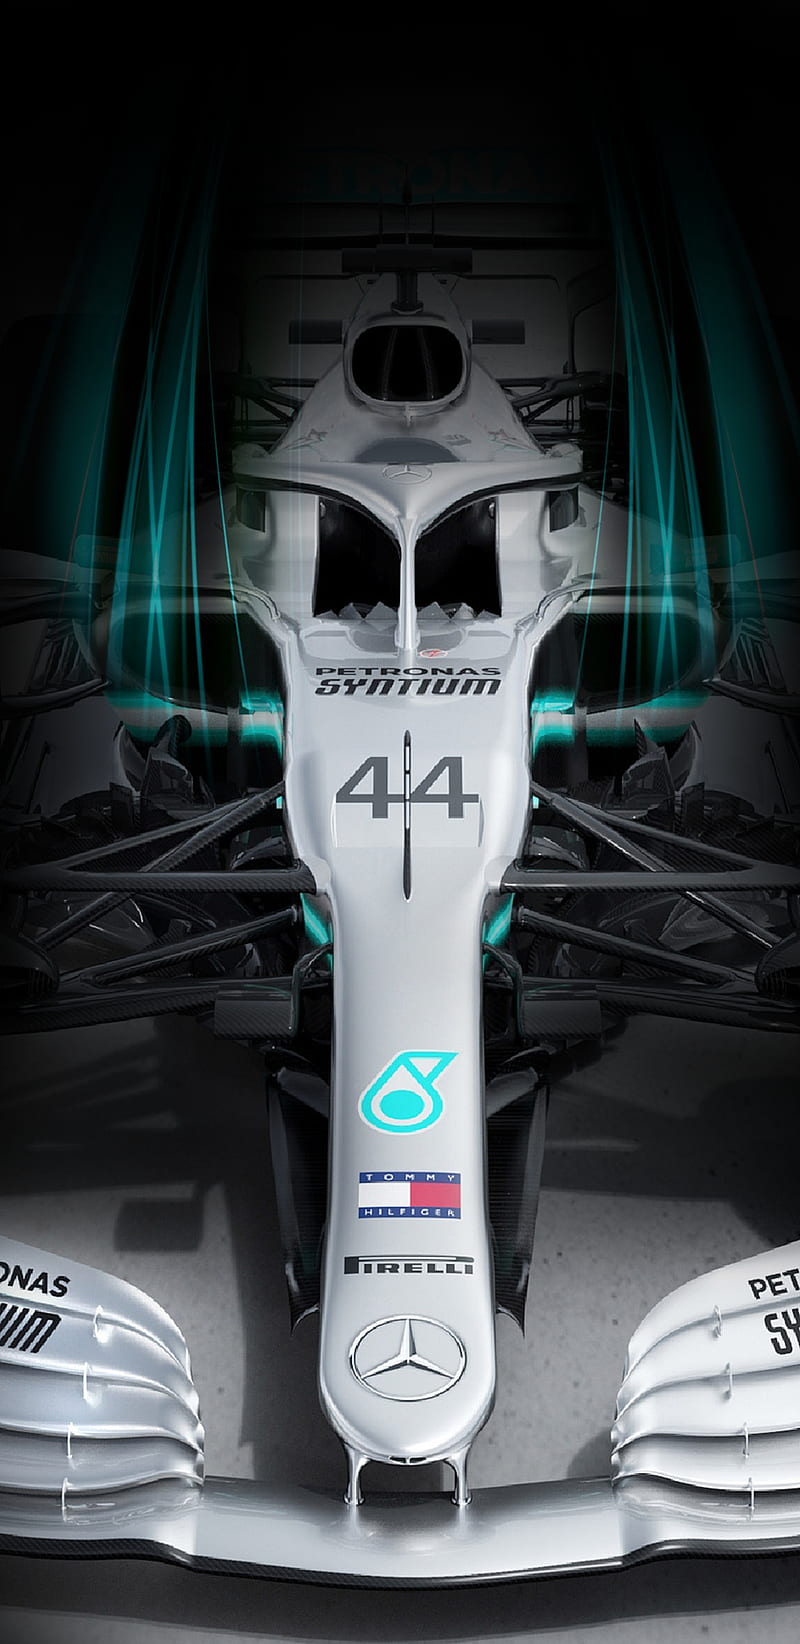 Mercedes Petronas , amg, benz, carros, f1, formula 1, formula 1, hamilton, lewis, mercedes, petronas, HD phone wallpaper